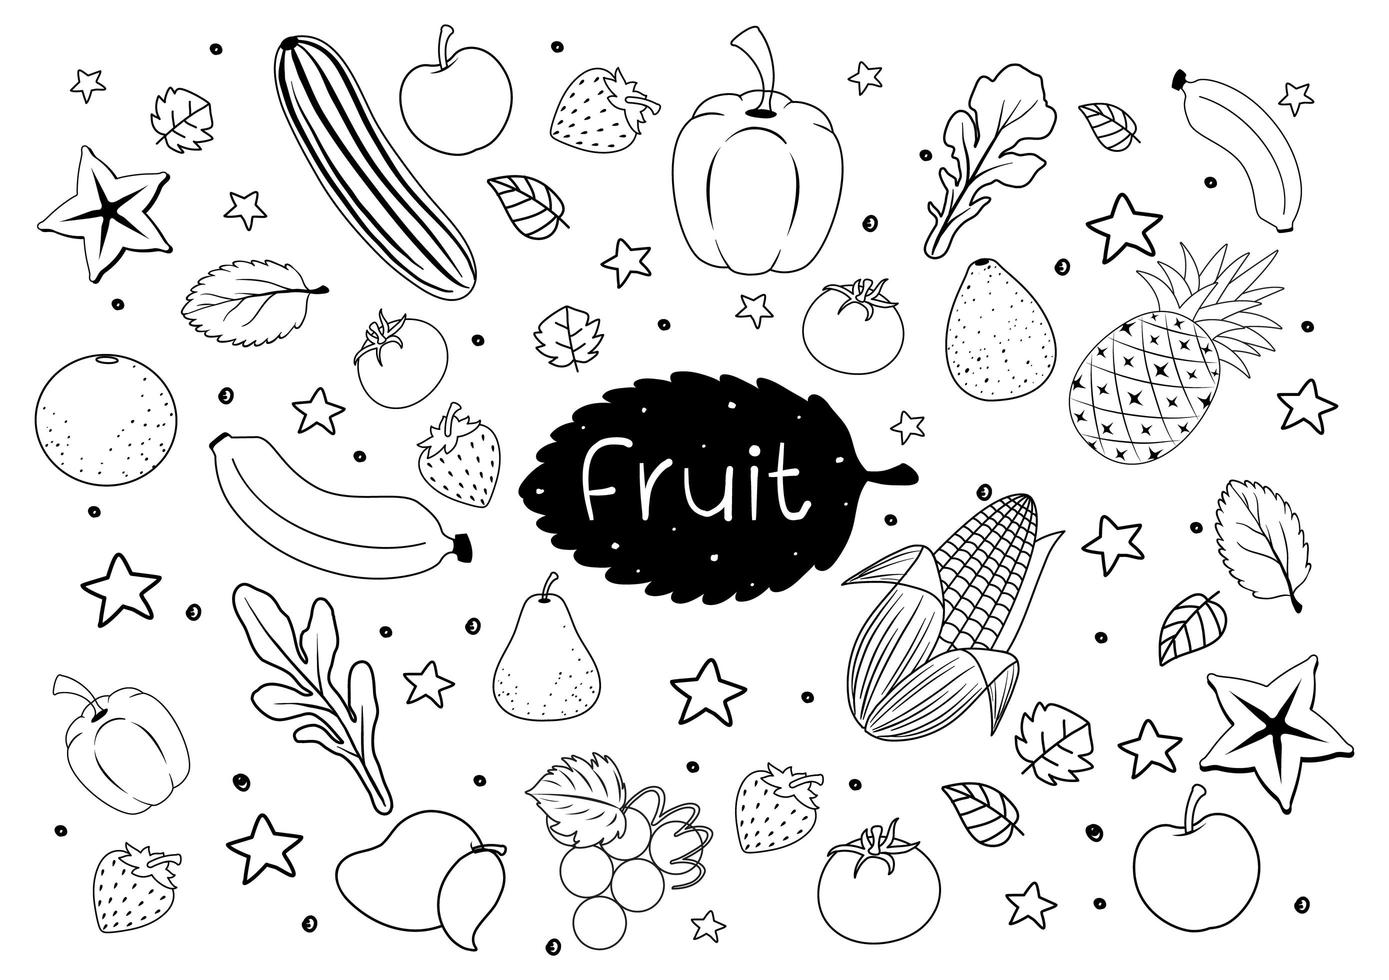 frutas em estilo doodle ou desenho isolado no fundo branco vetor